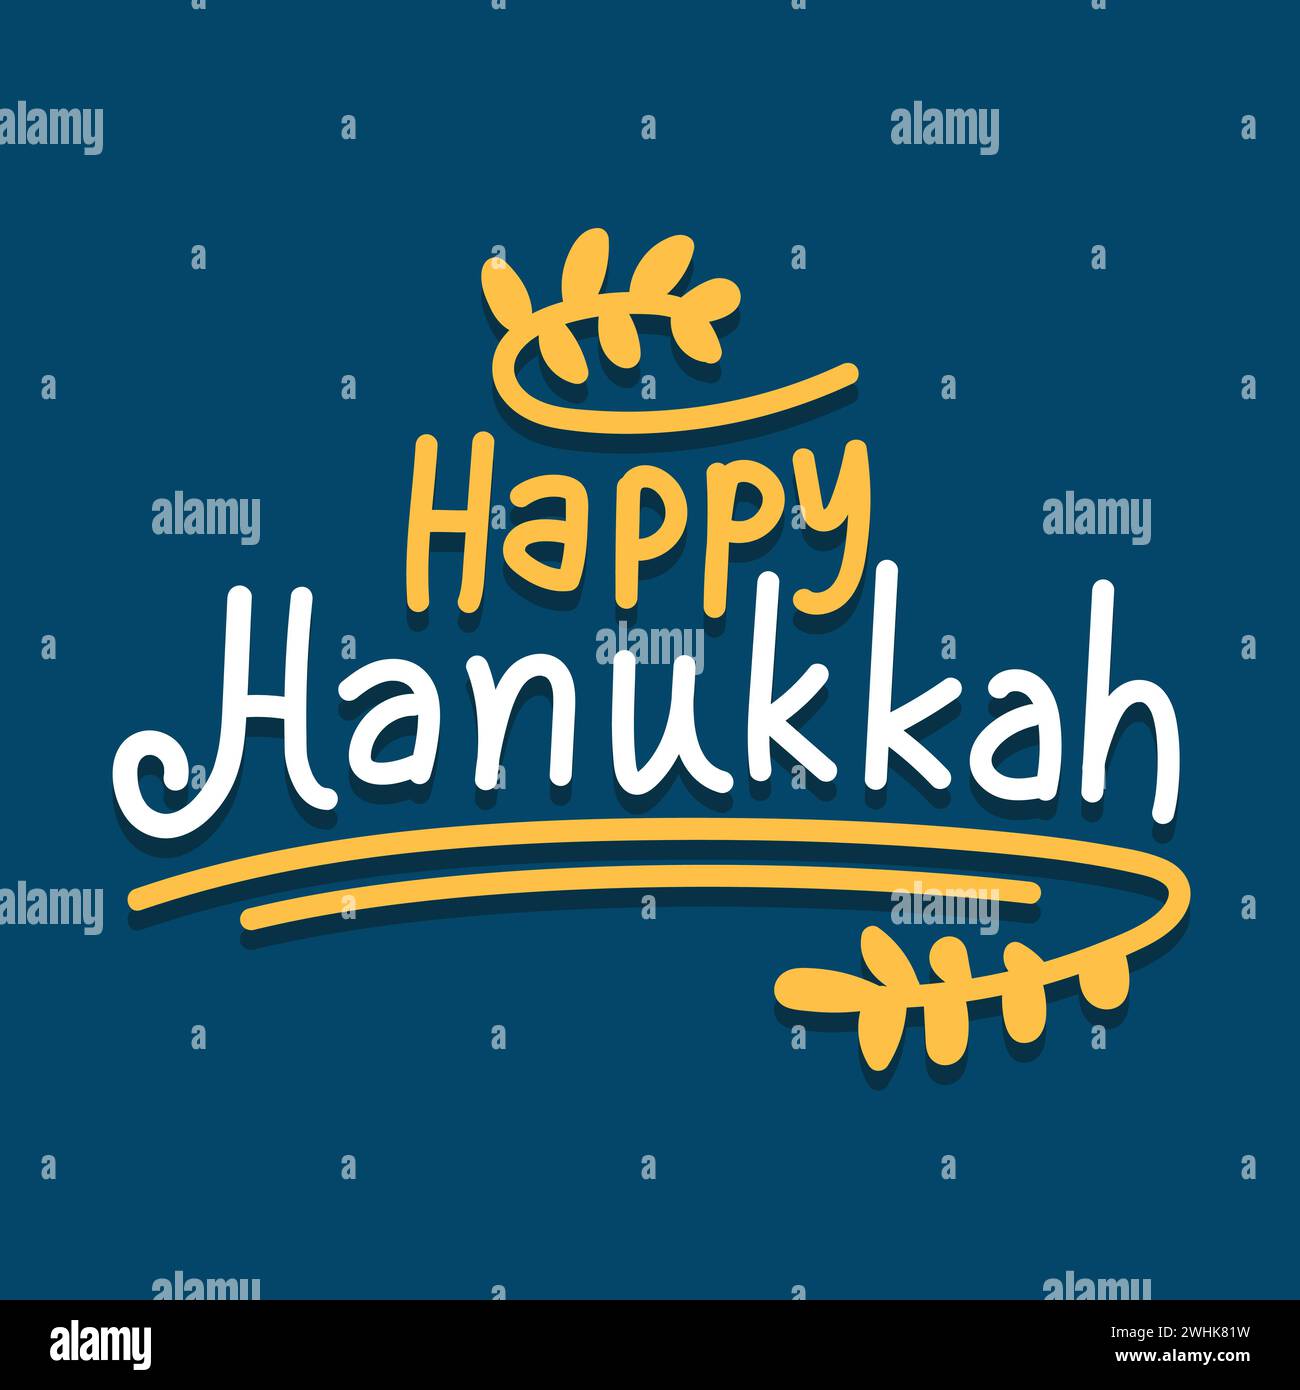 Glückliche Hanukkah Vektor-Illustration auf blauem Hintergrund. Hanukkah Typografie und Grußkarte mit Schriftzug. Handgezeichnete Typografie-Vorlage. Stock Vektor